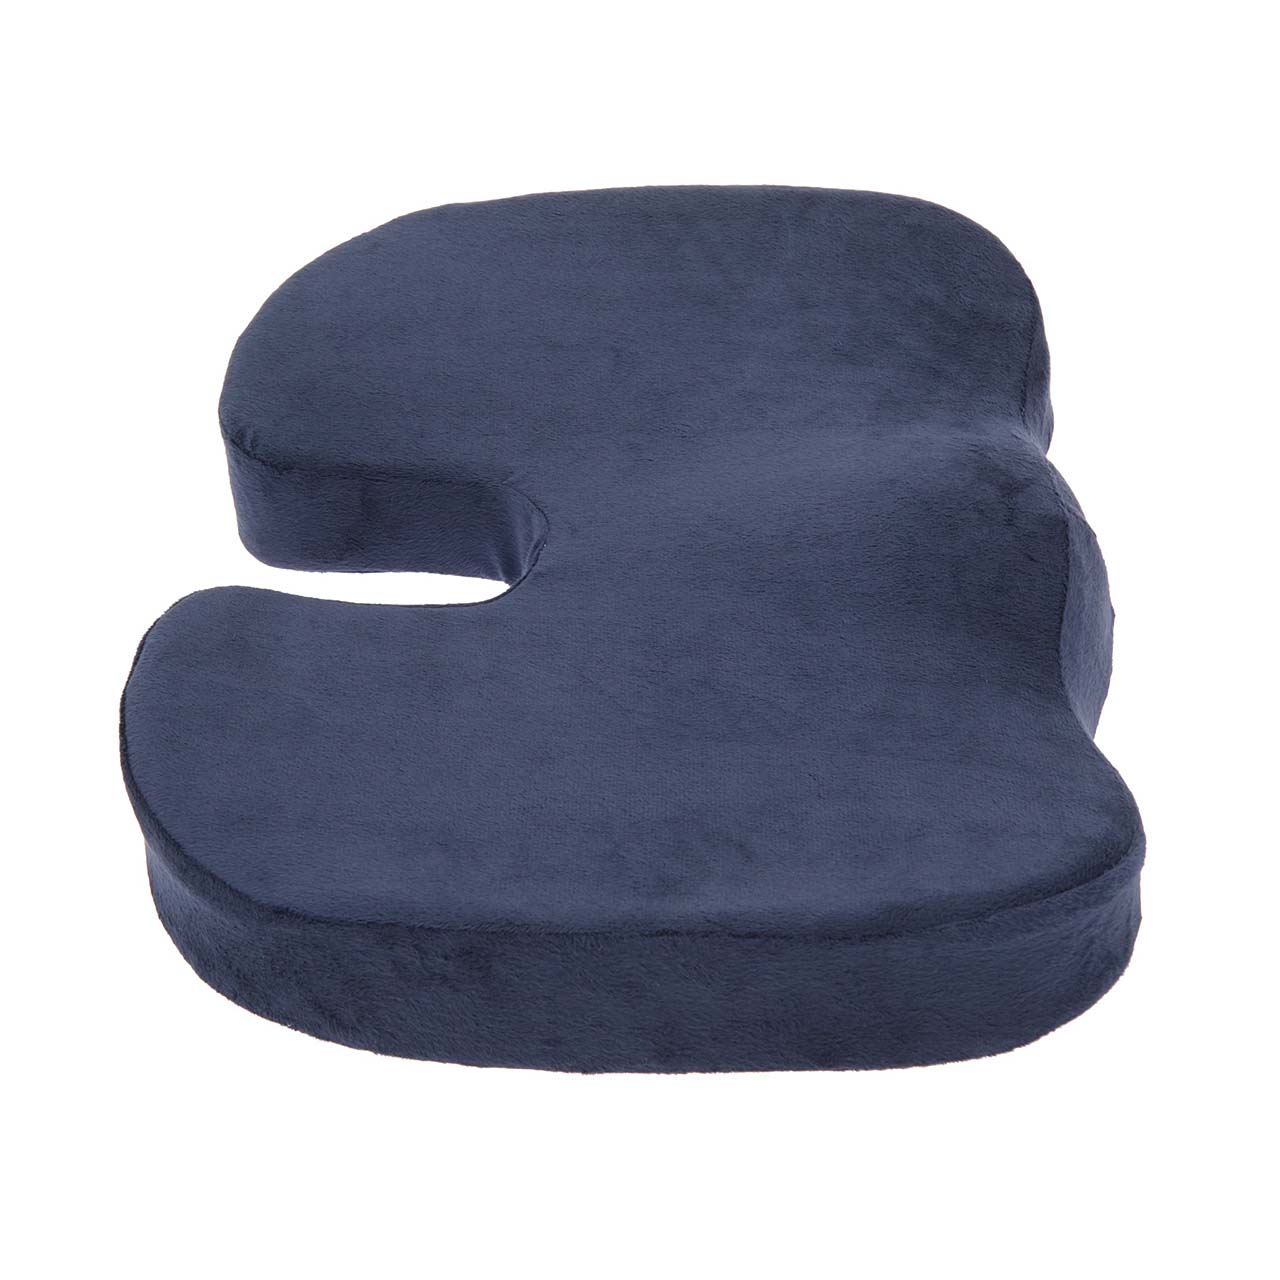 Coccyx Orthopedic Comfort Foam Seat Cushion - Grey